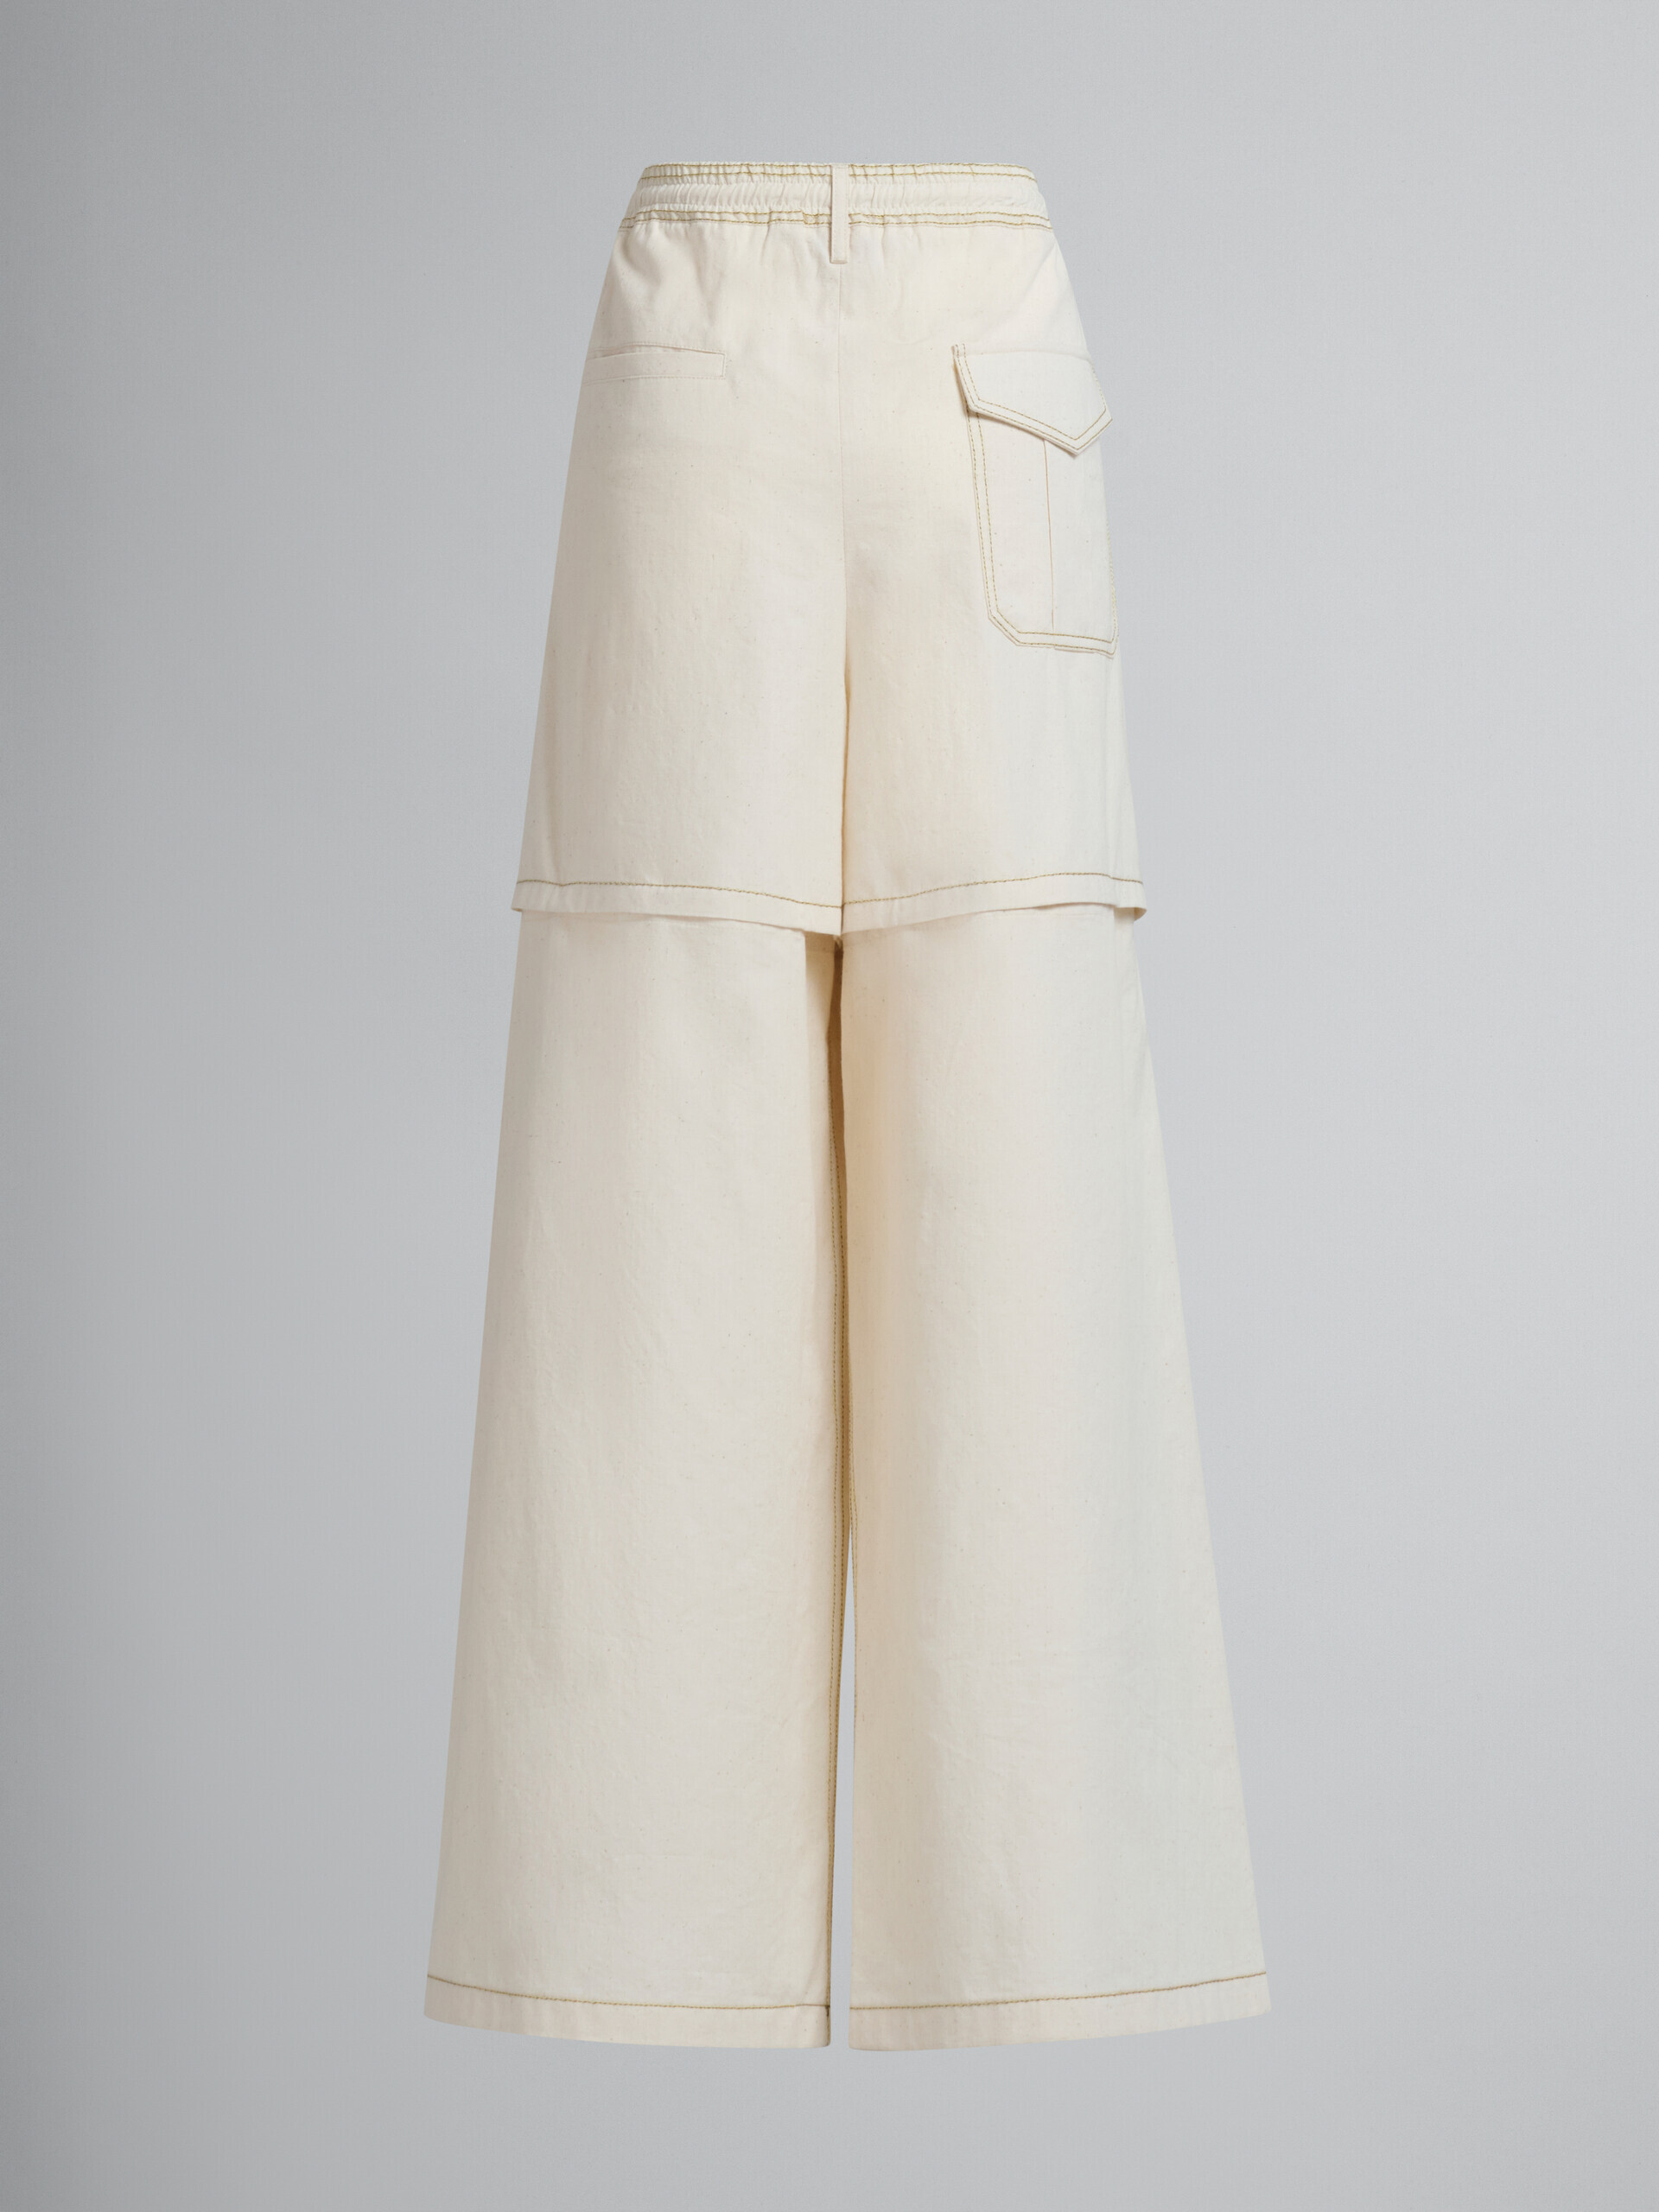 Pantalón cargo de lona de algodón orgánico beige claro con pespuntes Marni - Pantalones - Image 3